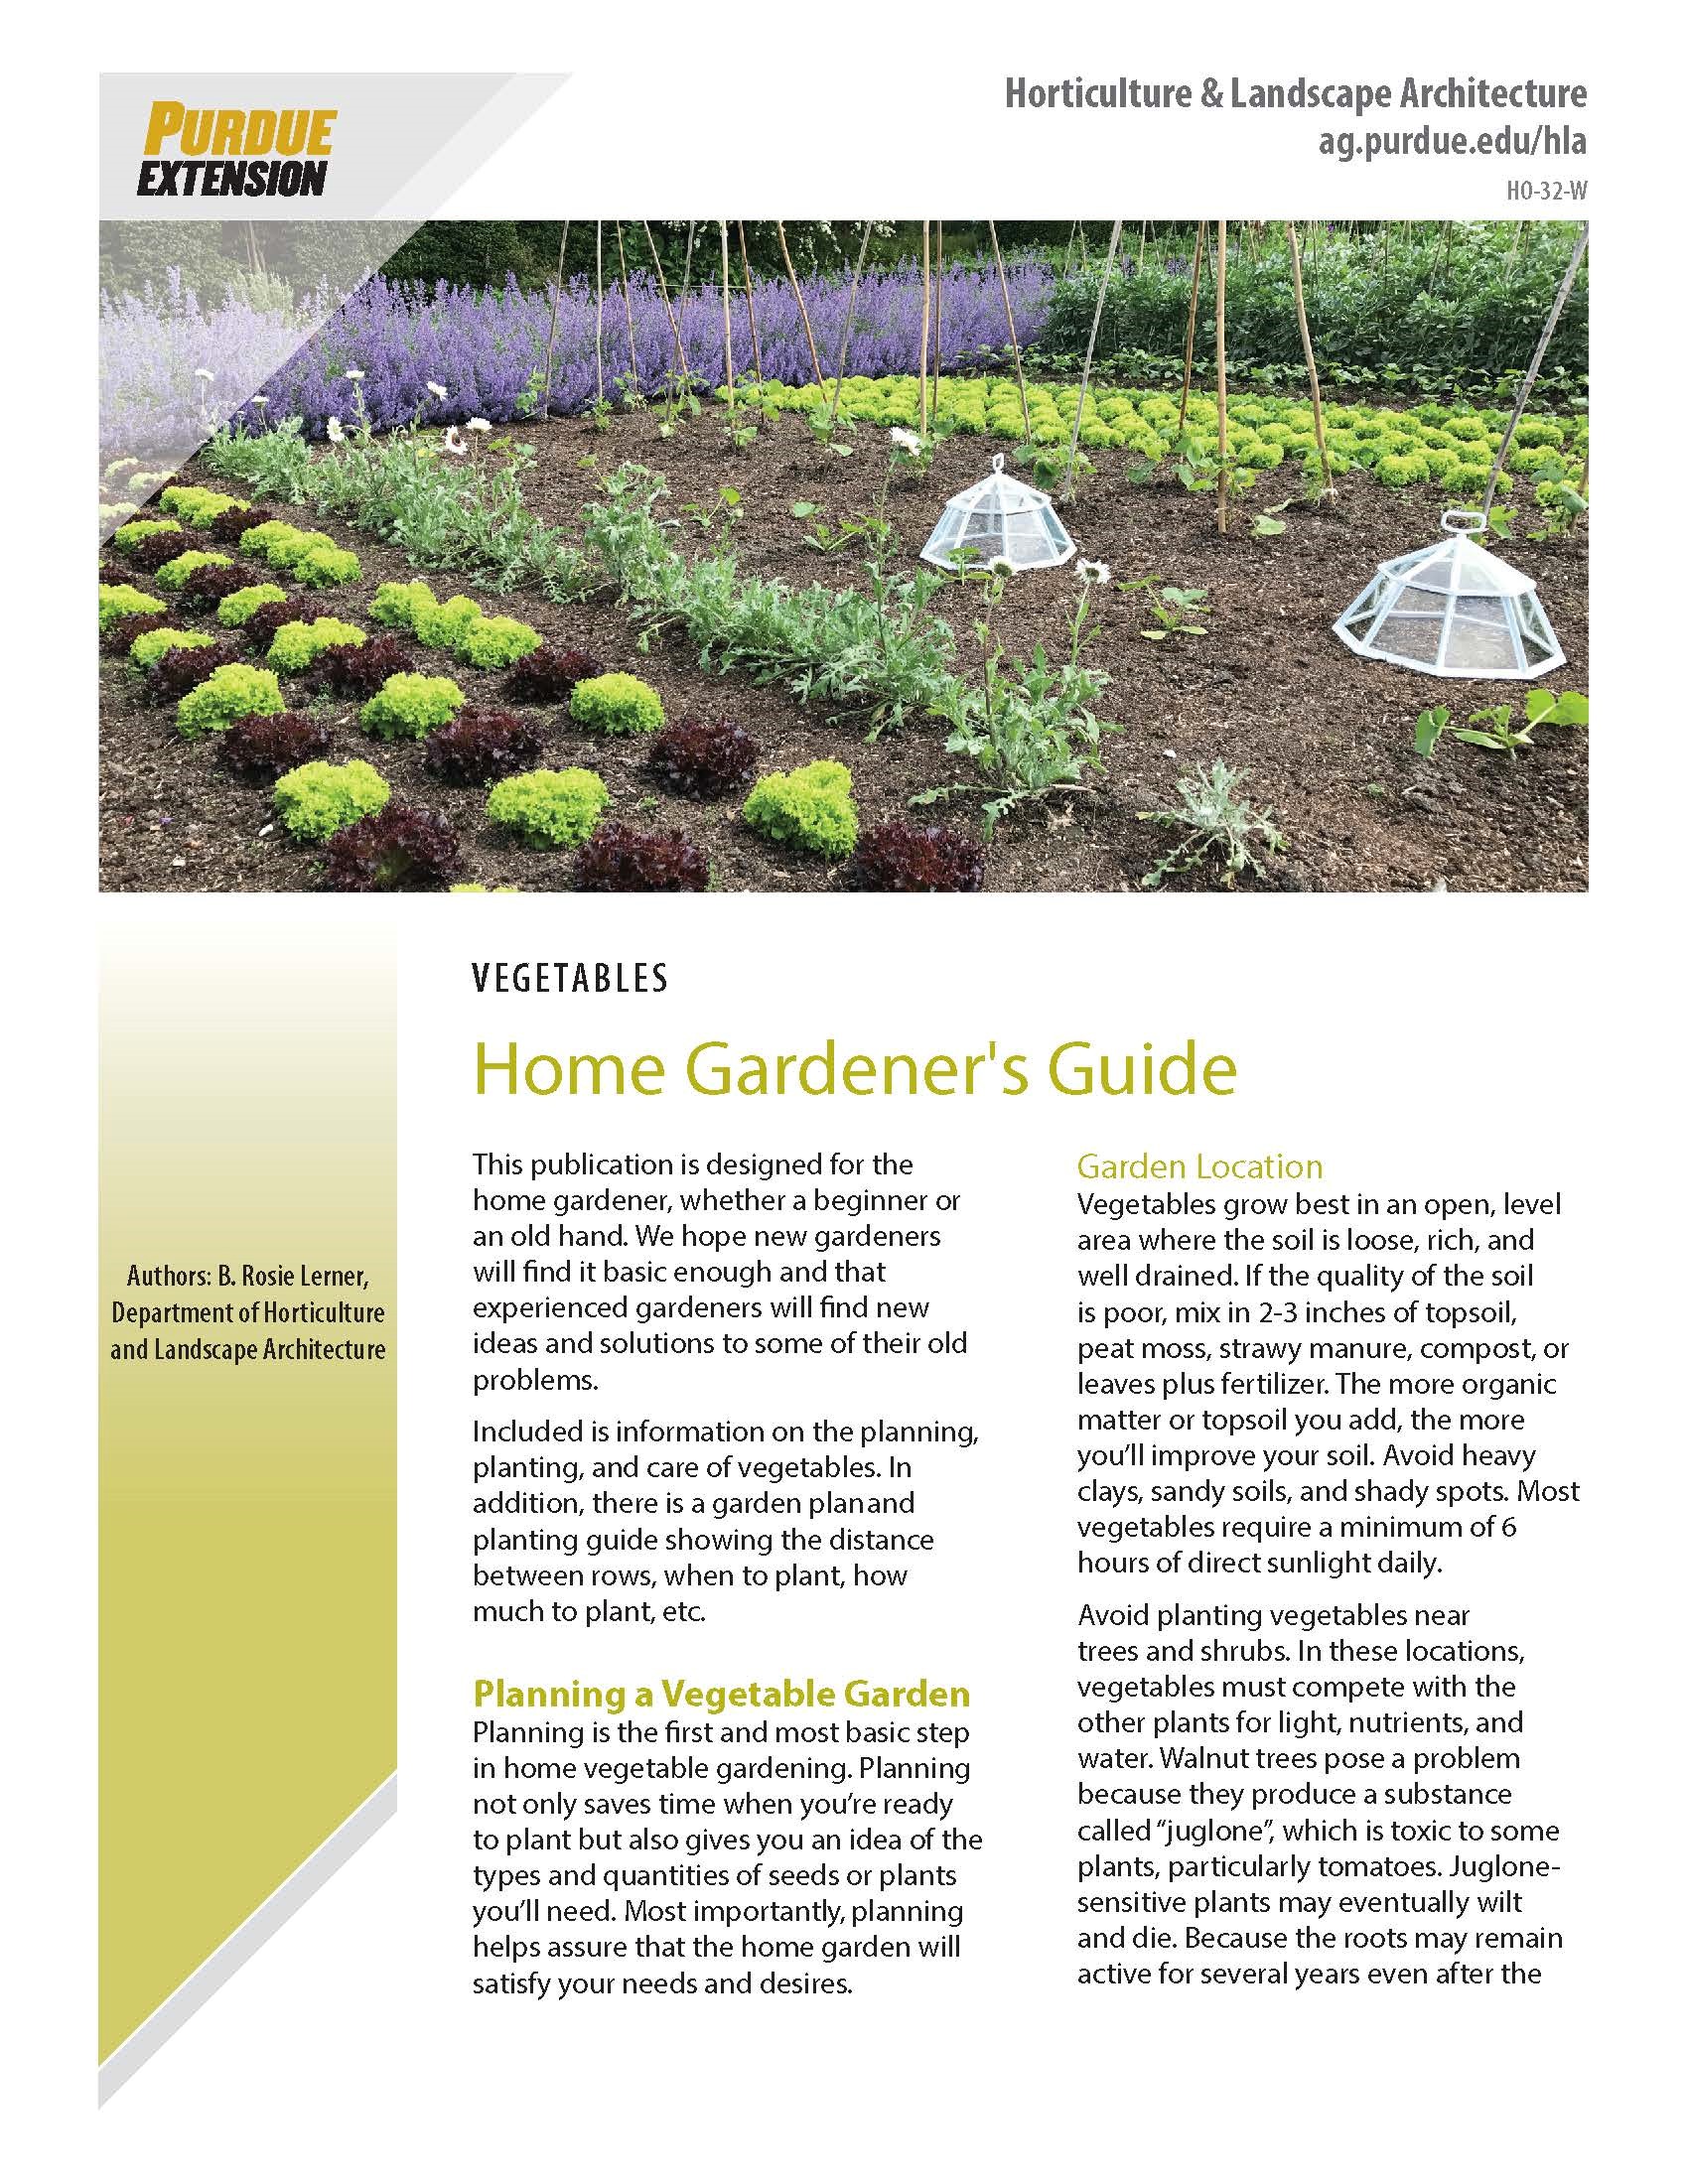 Home Gardener's Guide